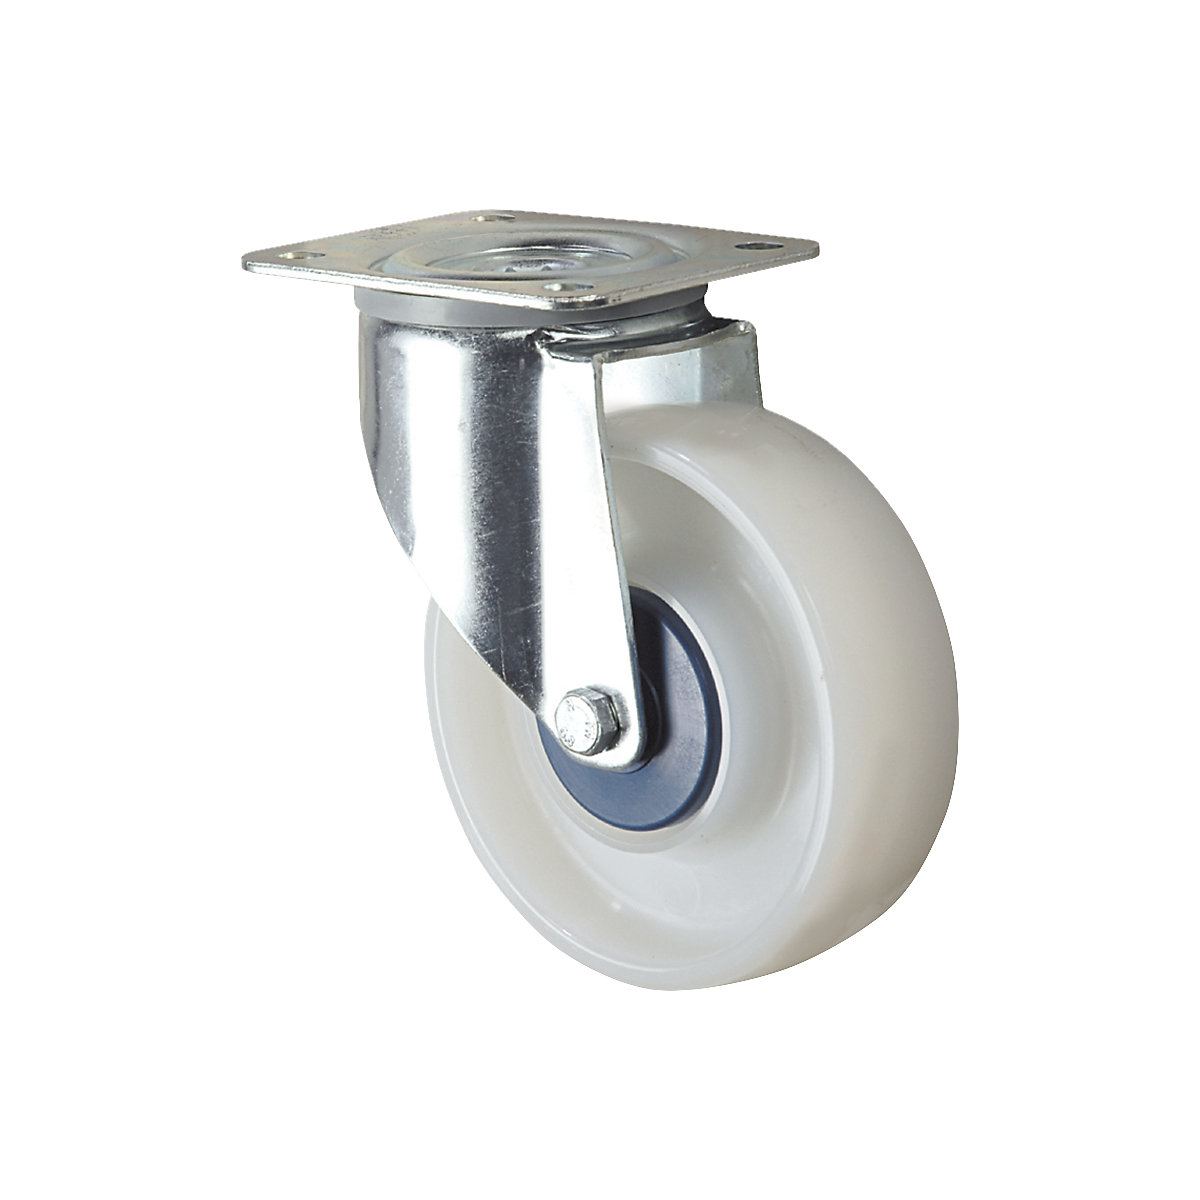 Polyamidové kolo, bílá barva – TENTE, Ø kola x šířka 100 x 36 mm, otočné kolo-4